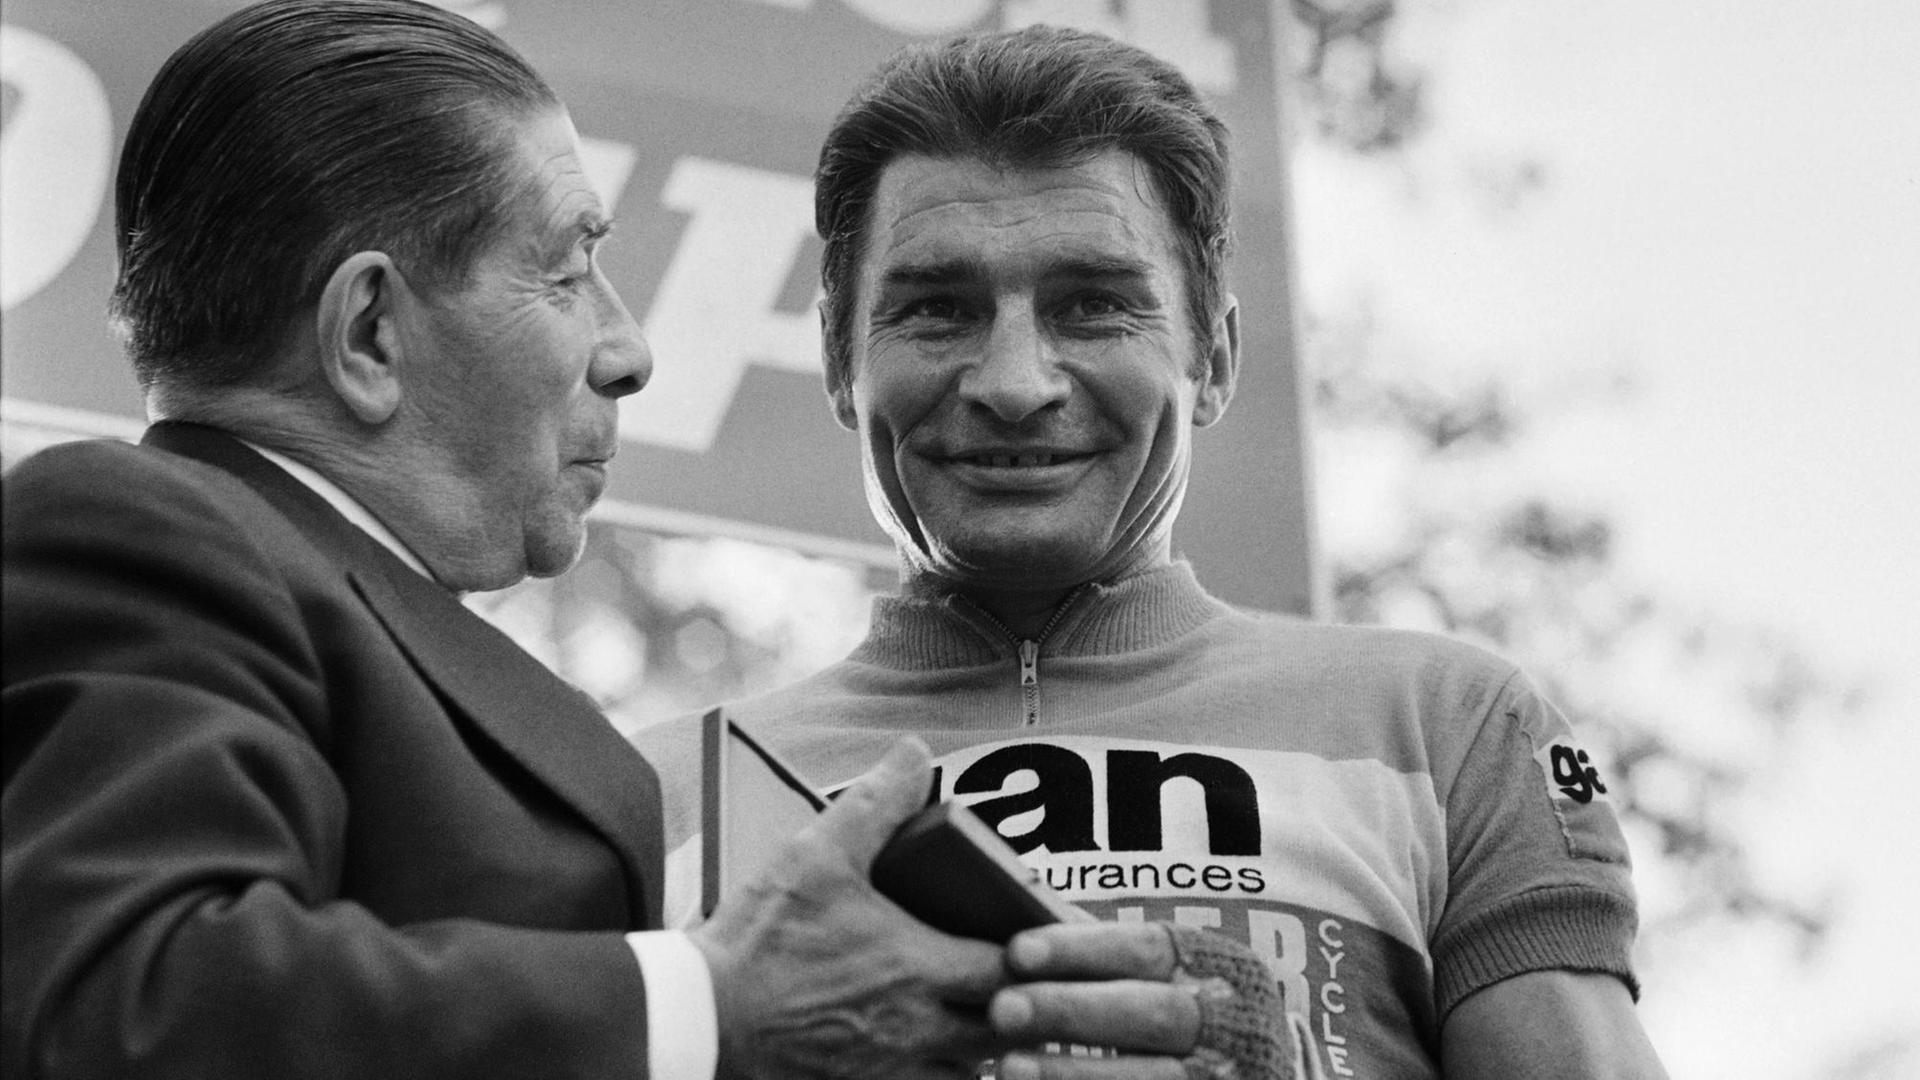 Der französische Radrennfahrer Raymond Poulidor nimmt eine Medaille entgegen.